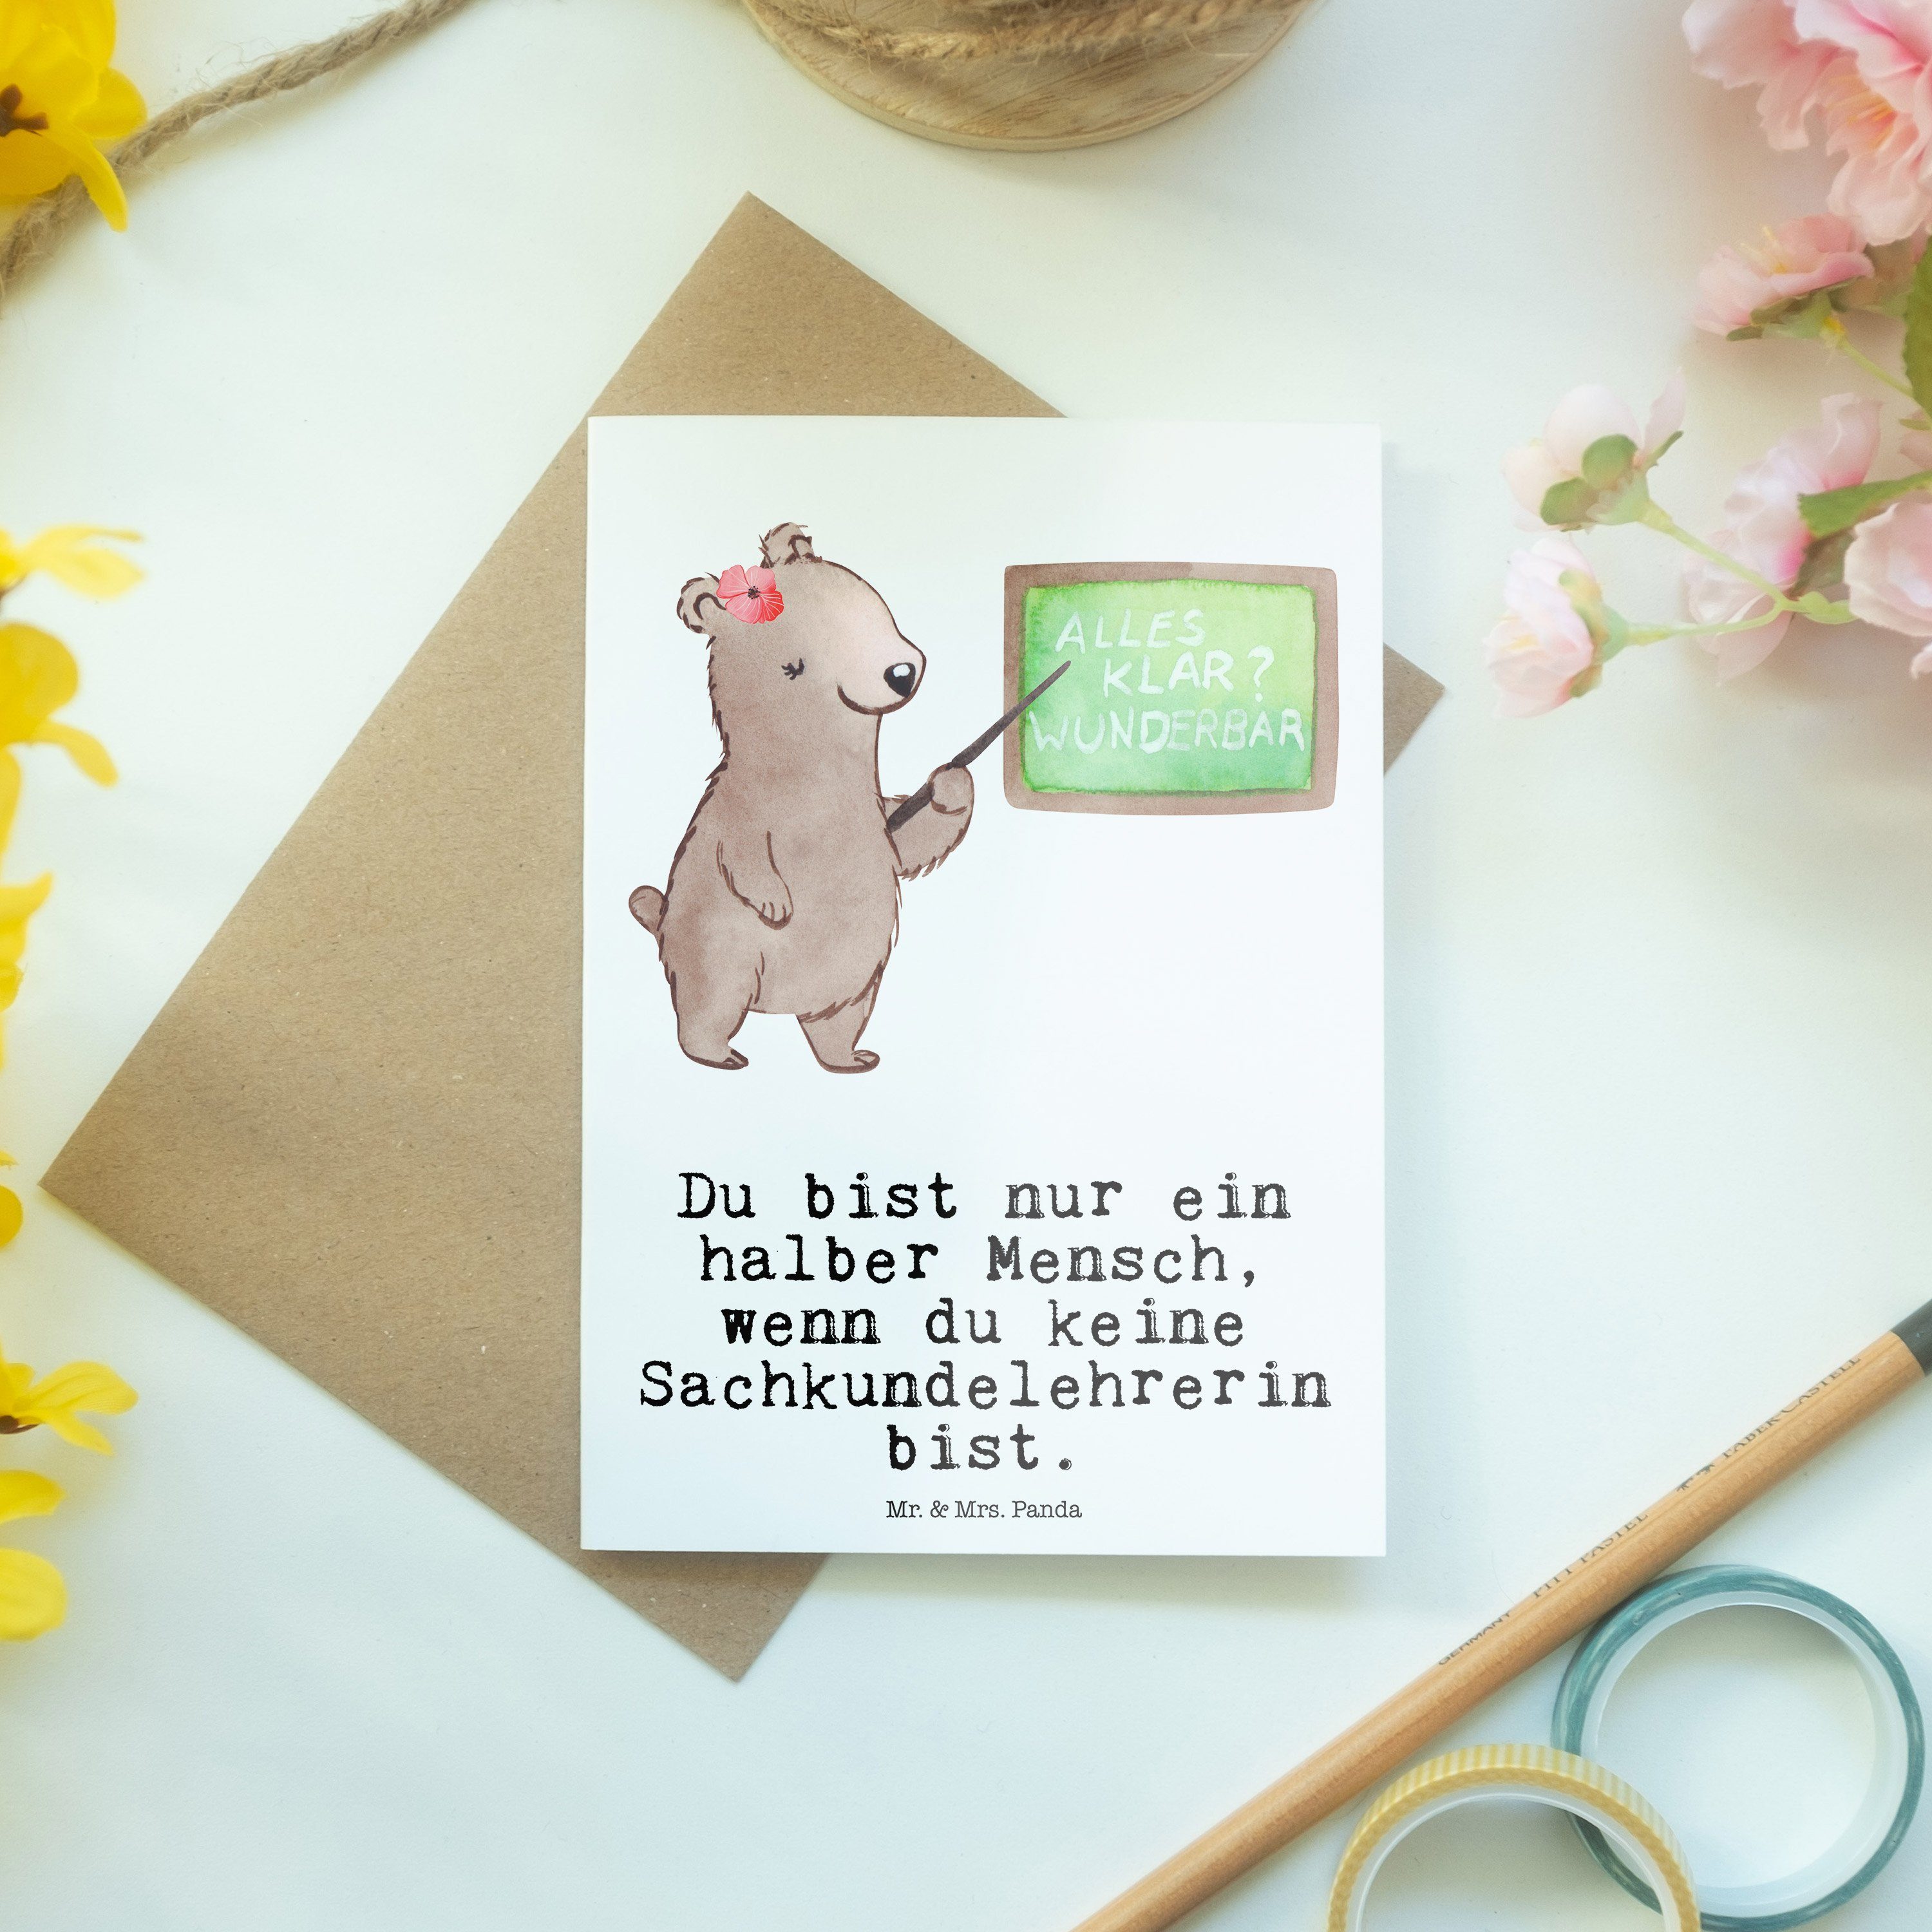 Mr. & Mrs. Panda Weiß - Jubiläum, Grußkarte Kollegin, mit Herz Sachkundelehrerin Hoc - Geschenk